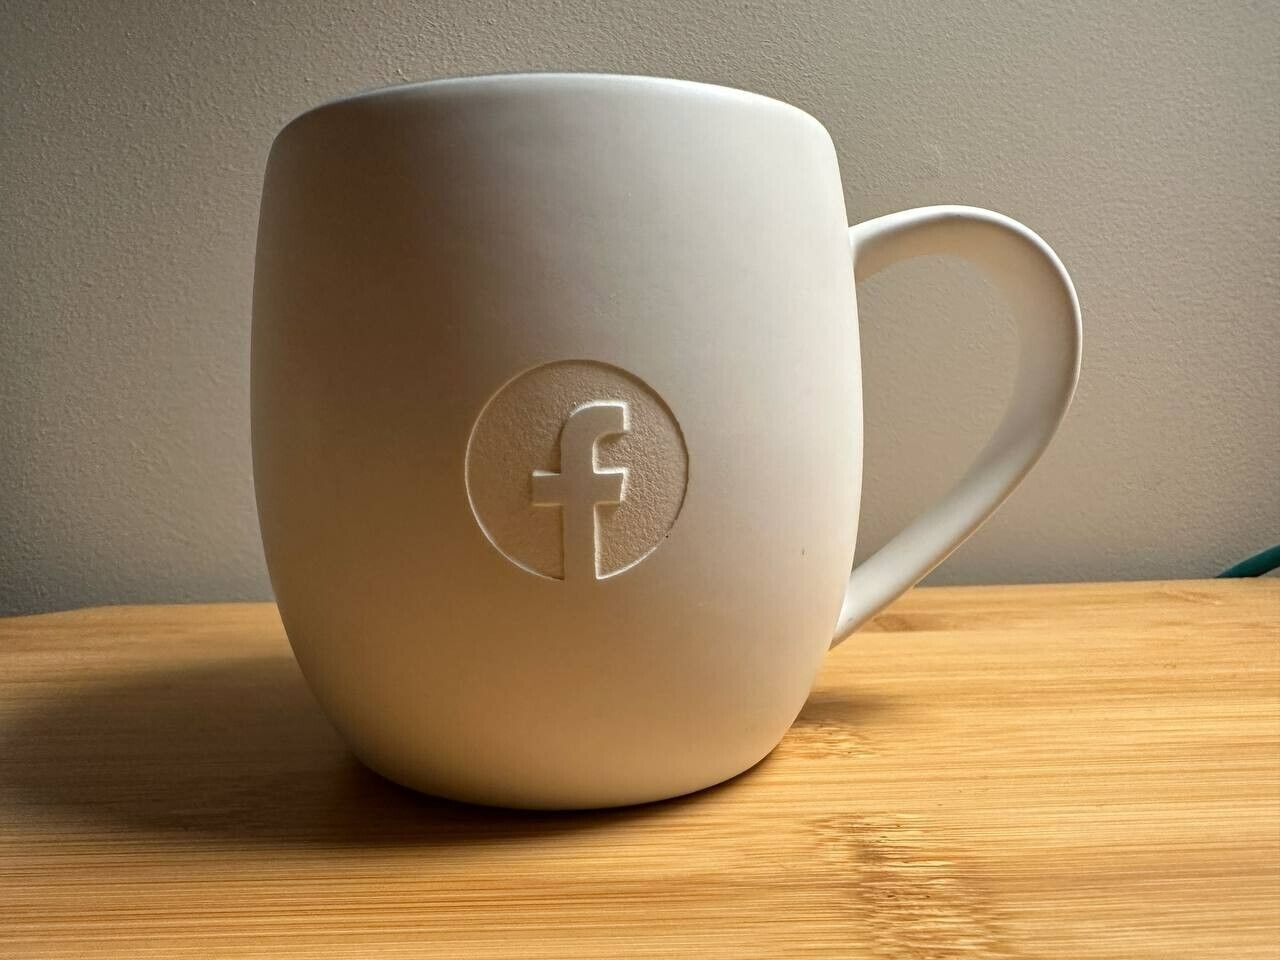 Logo Facebook Cream White Matte Finish Blue Interior Ceramic Mug